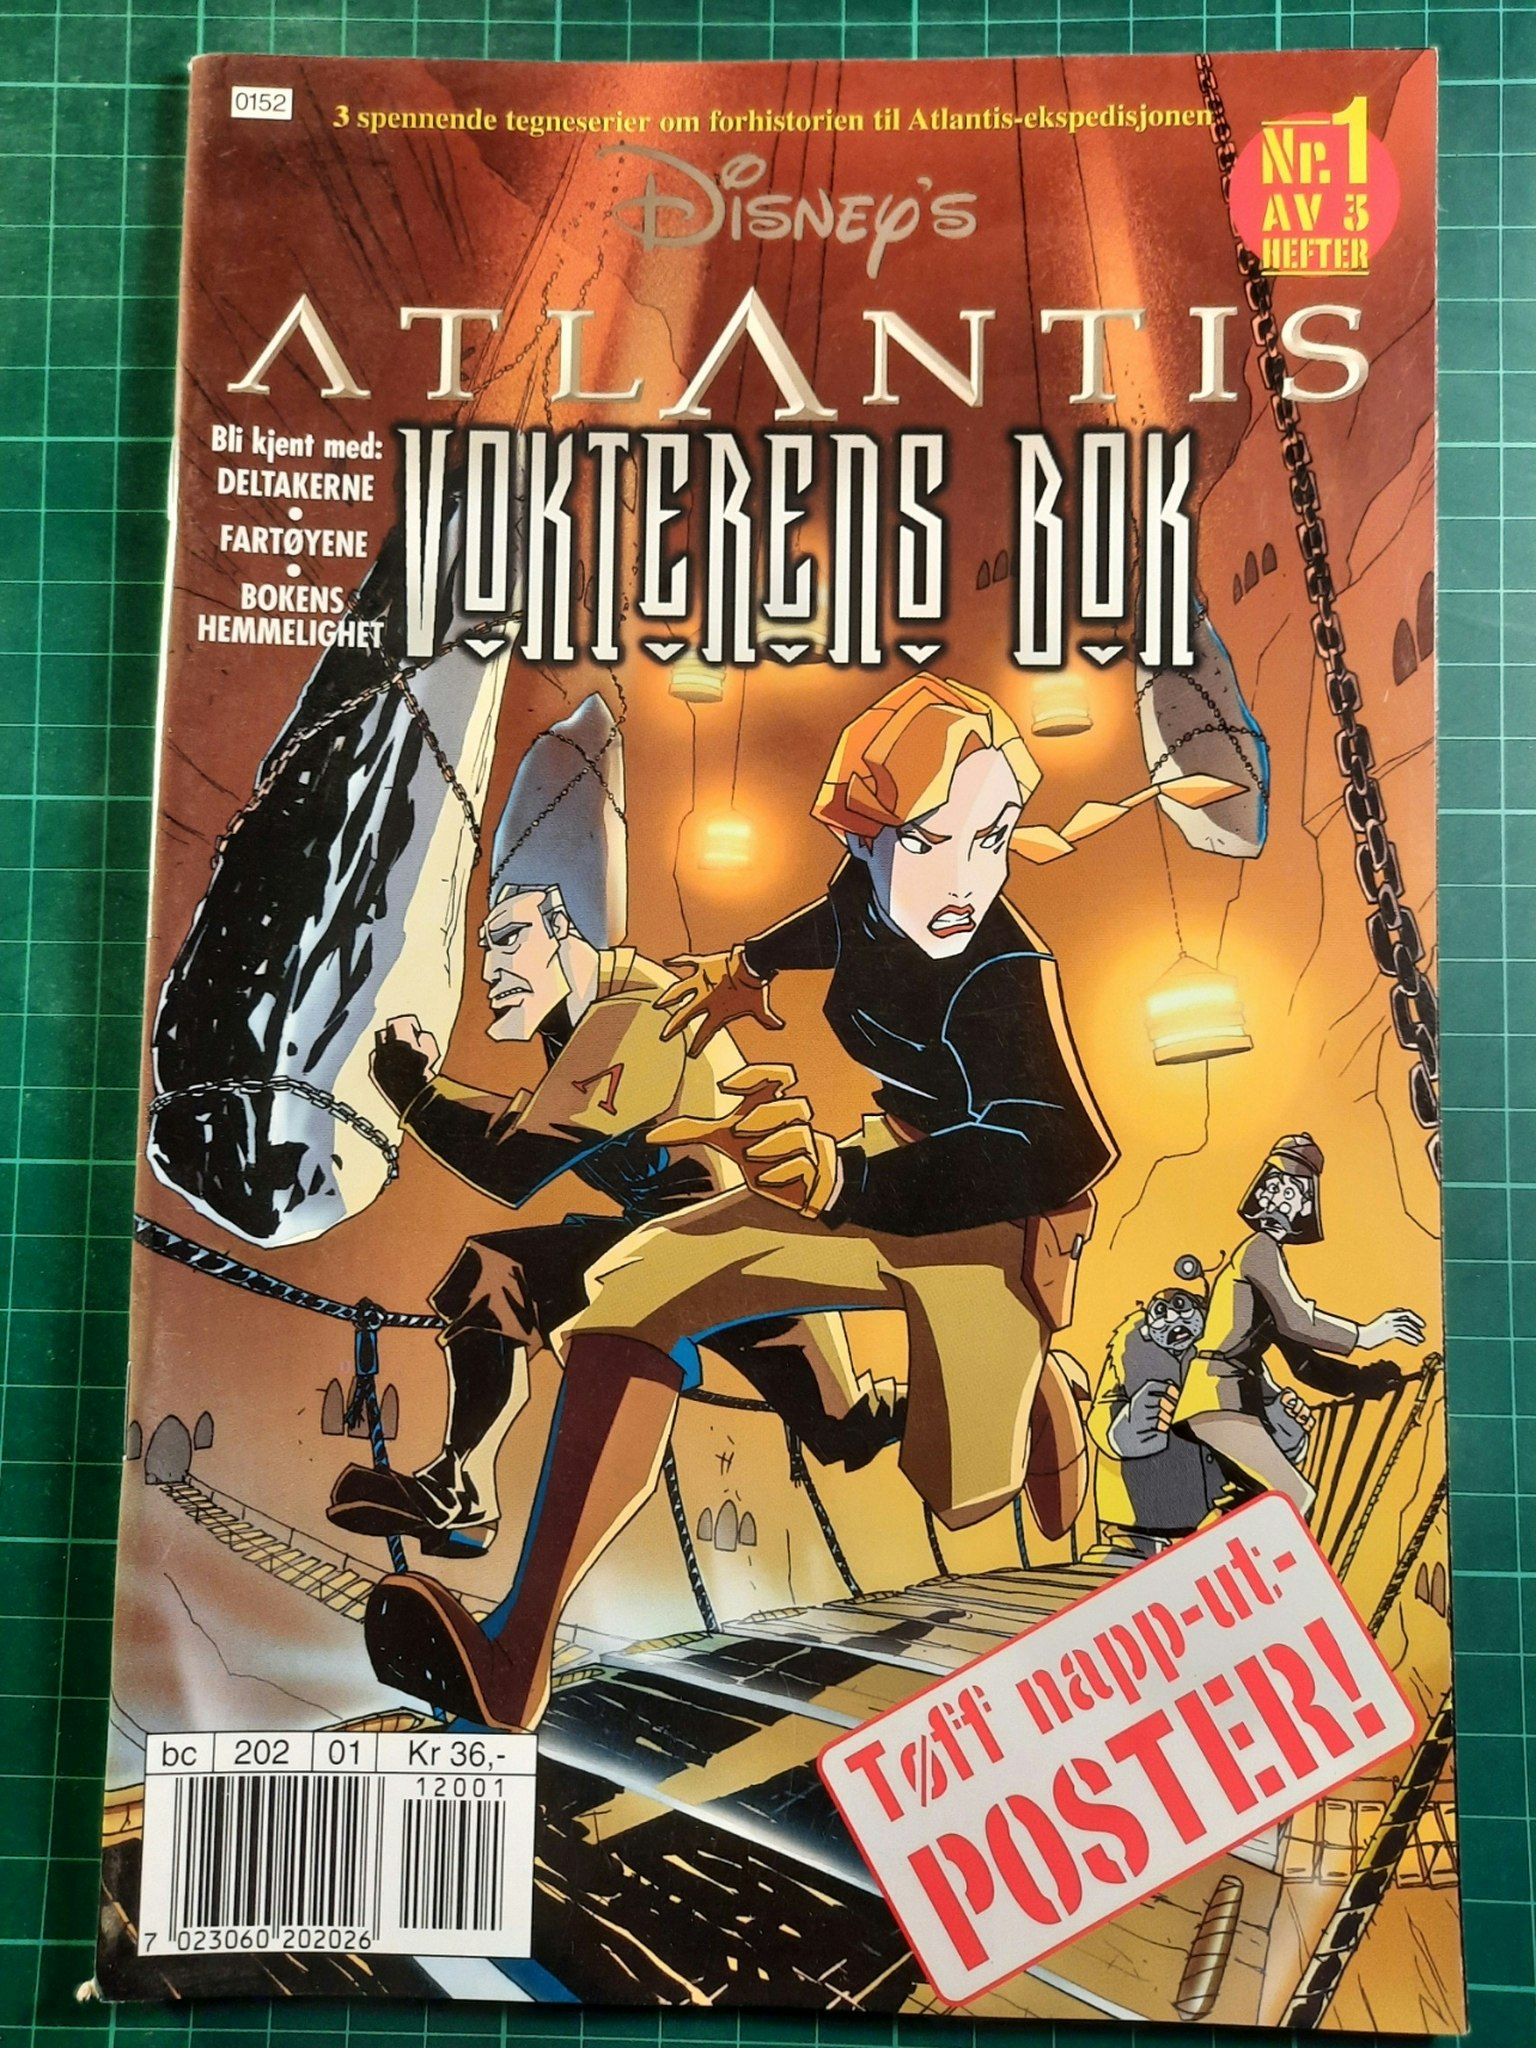 Atlantis nr 1 av 3 m/poster